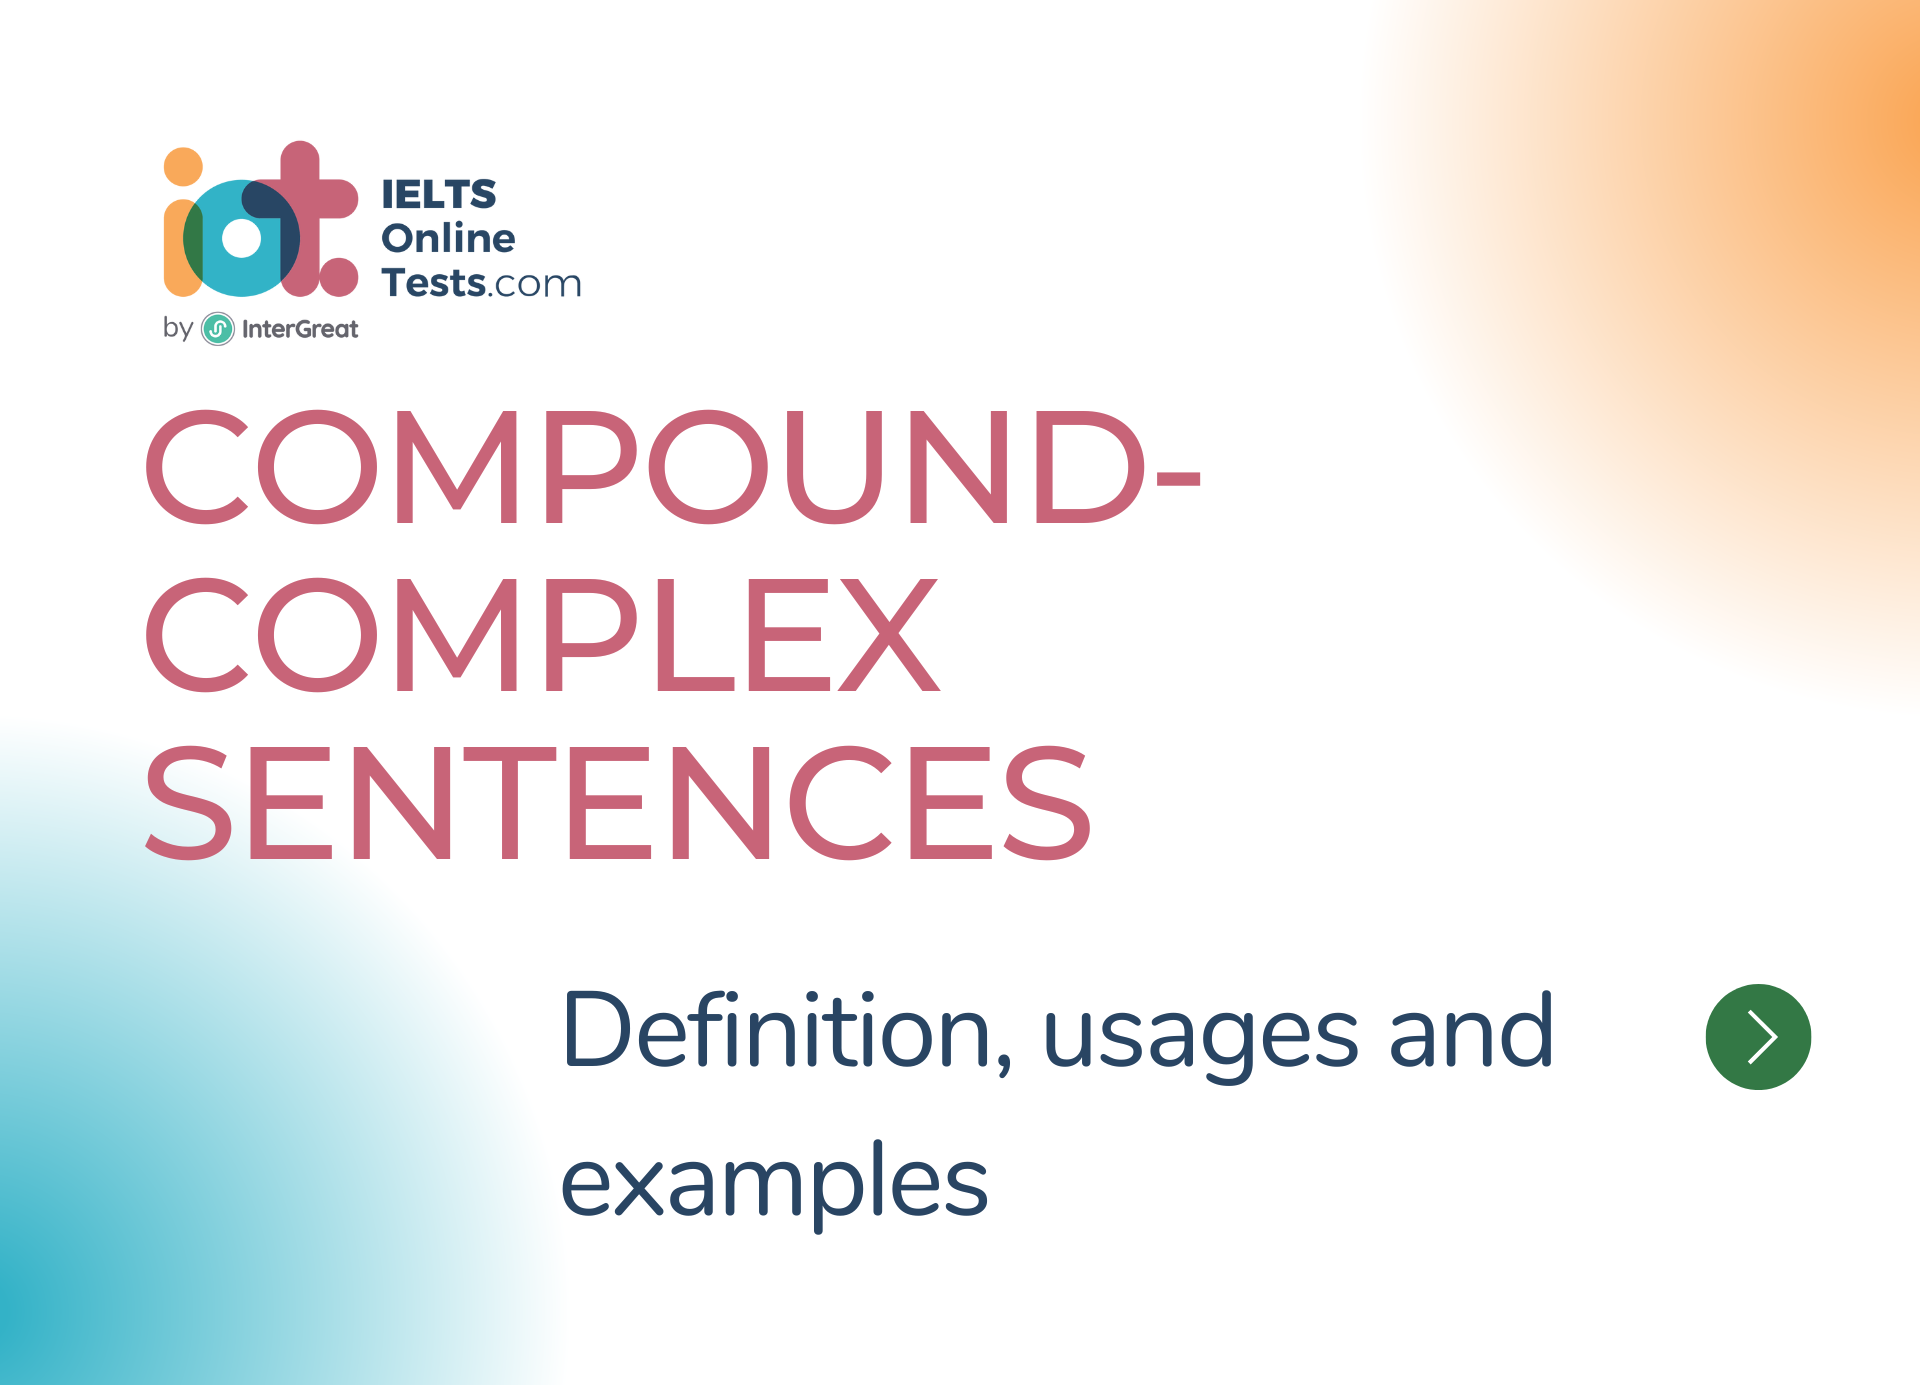 Complex Sentences and Compound-Complex Sentences